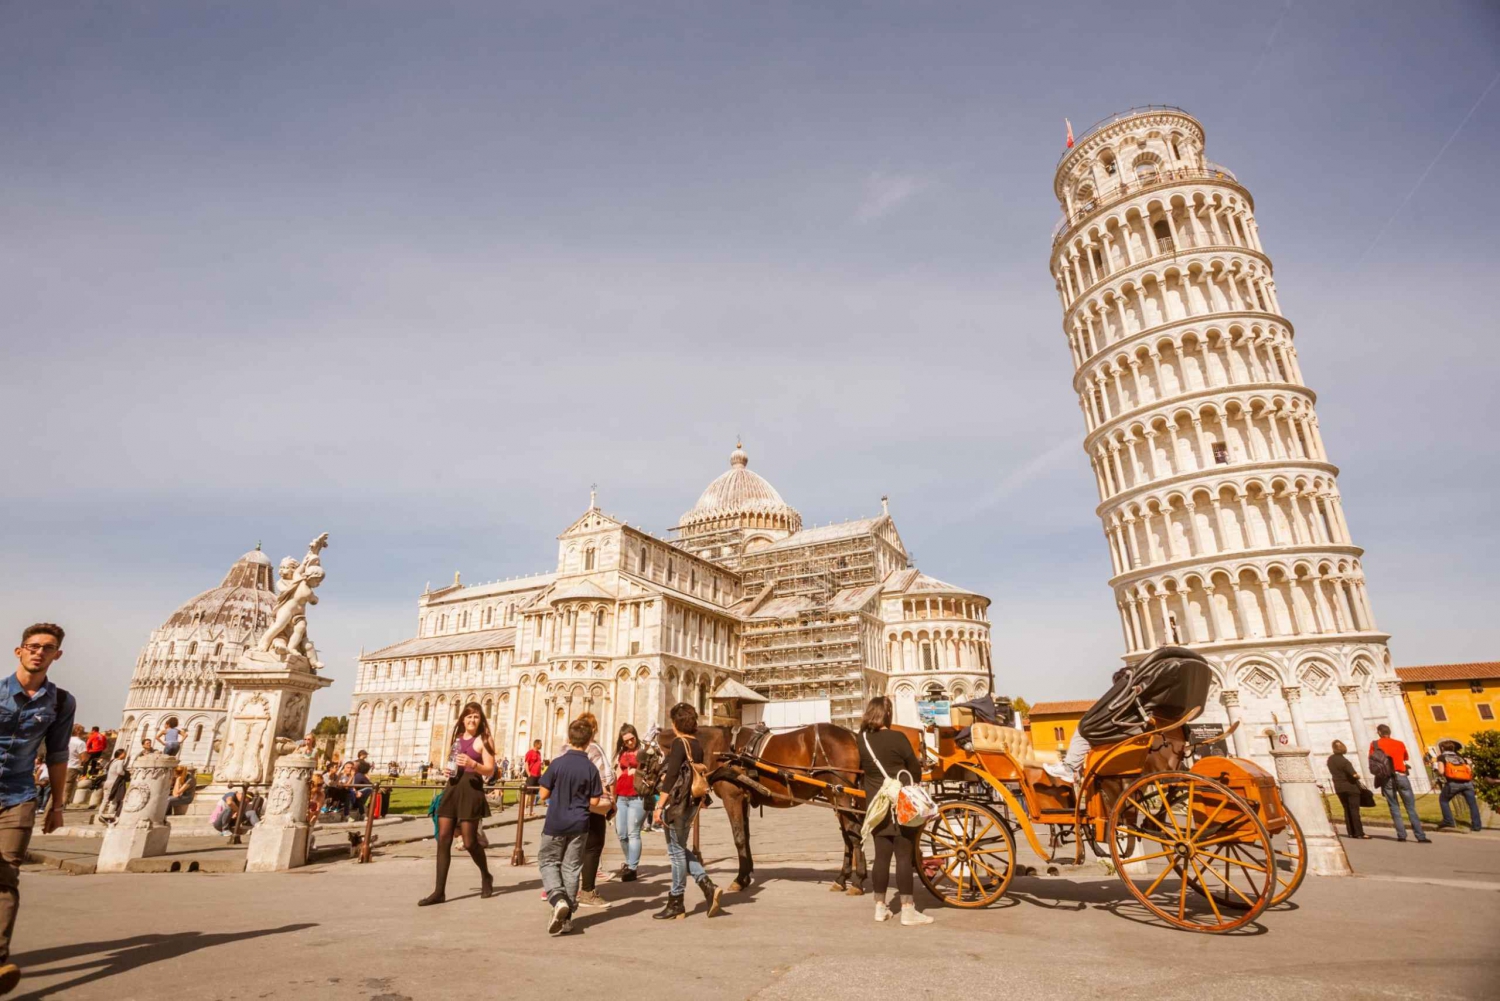 Z Florencji: Piza Day Tour z Krzywej Wieży w Pizie